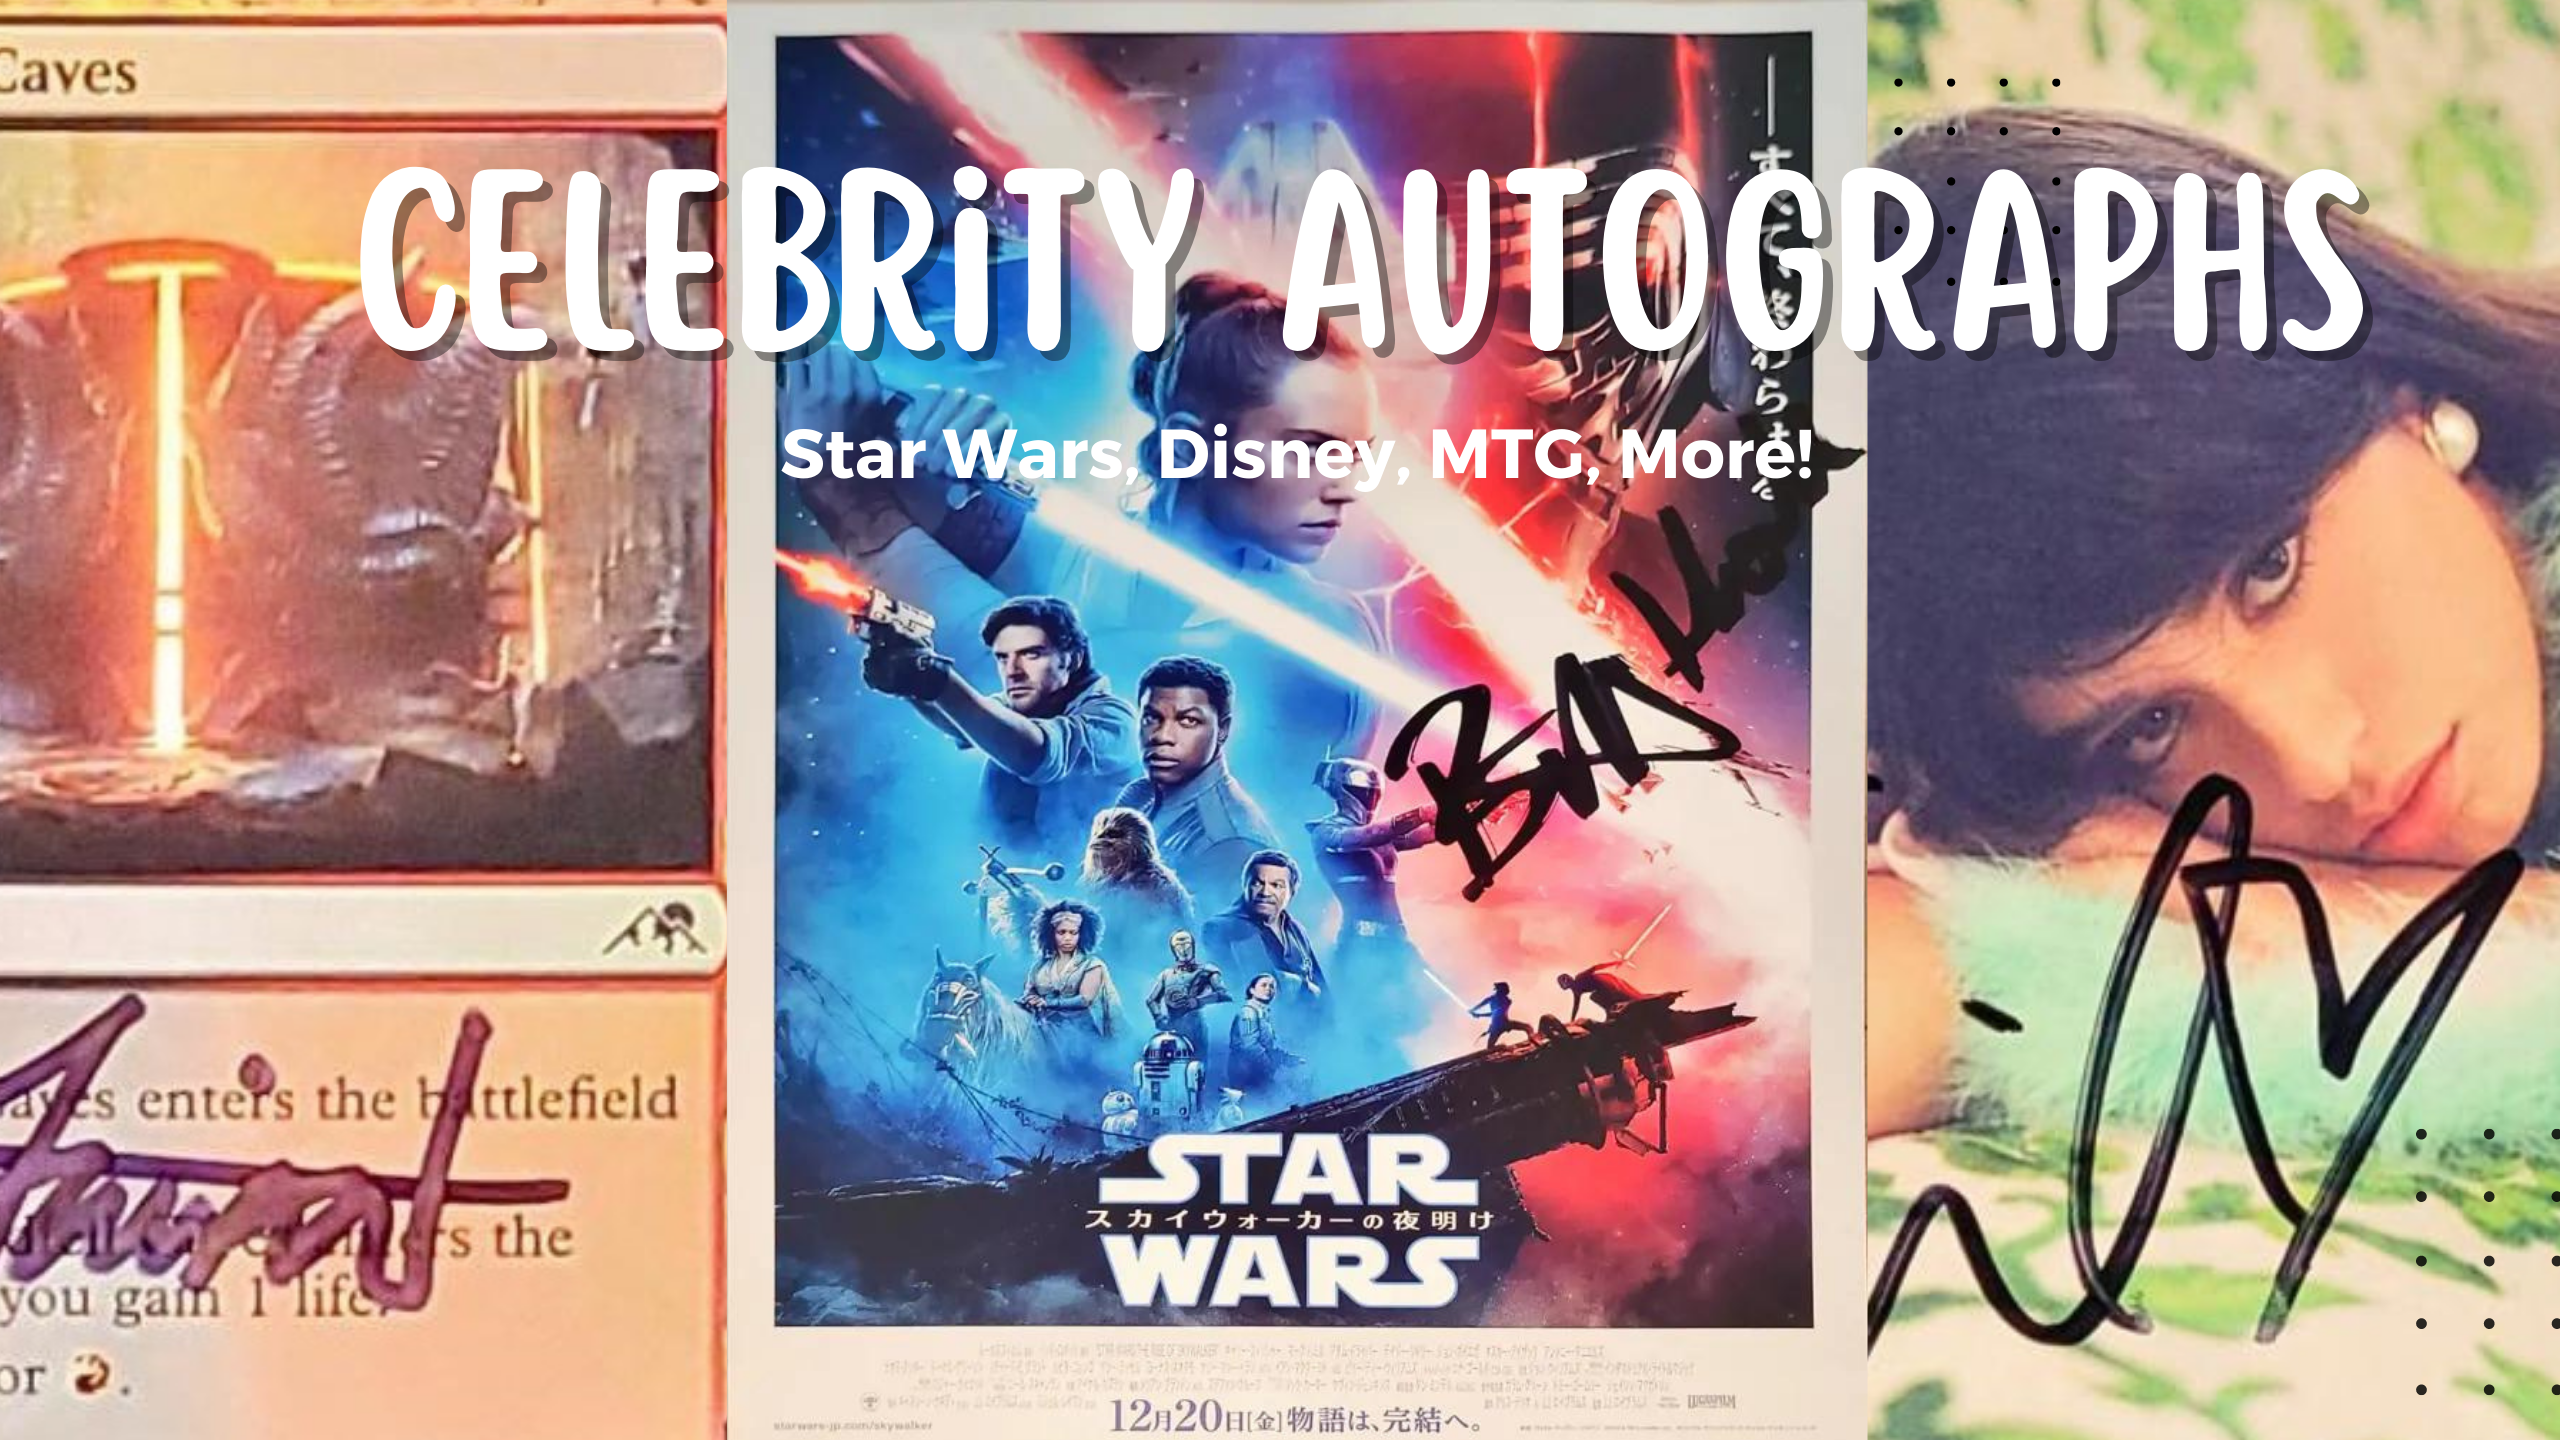 Celebrity Autographs